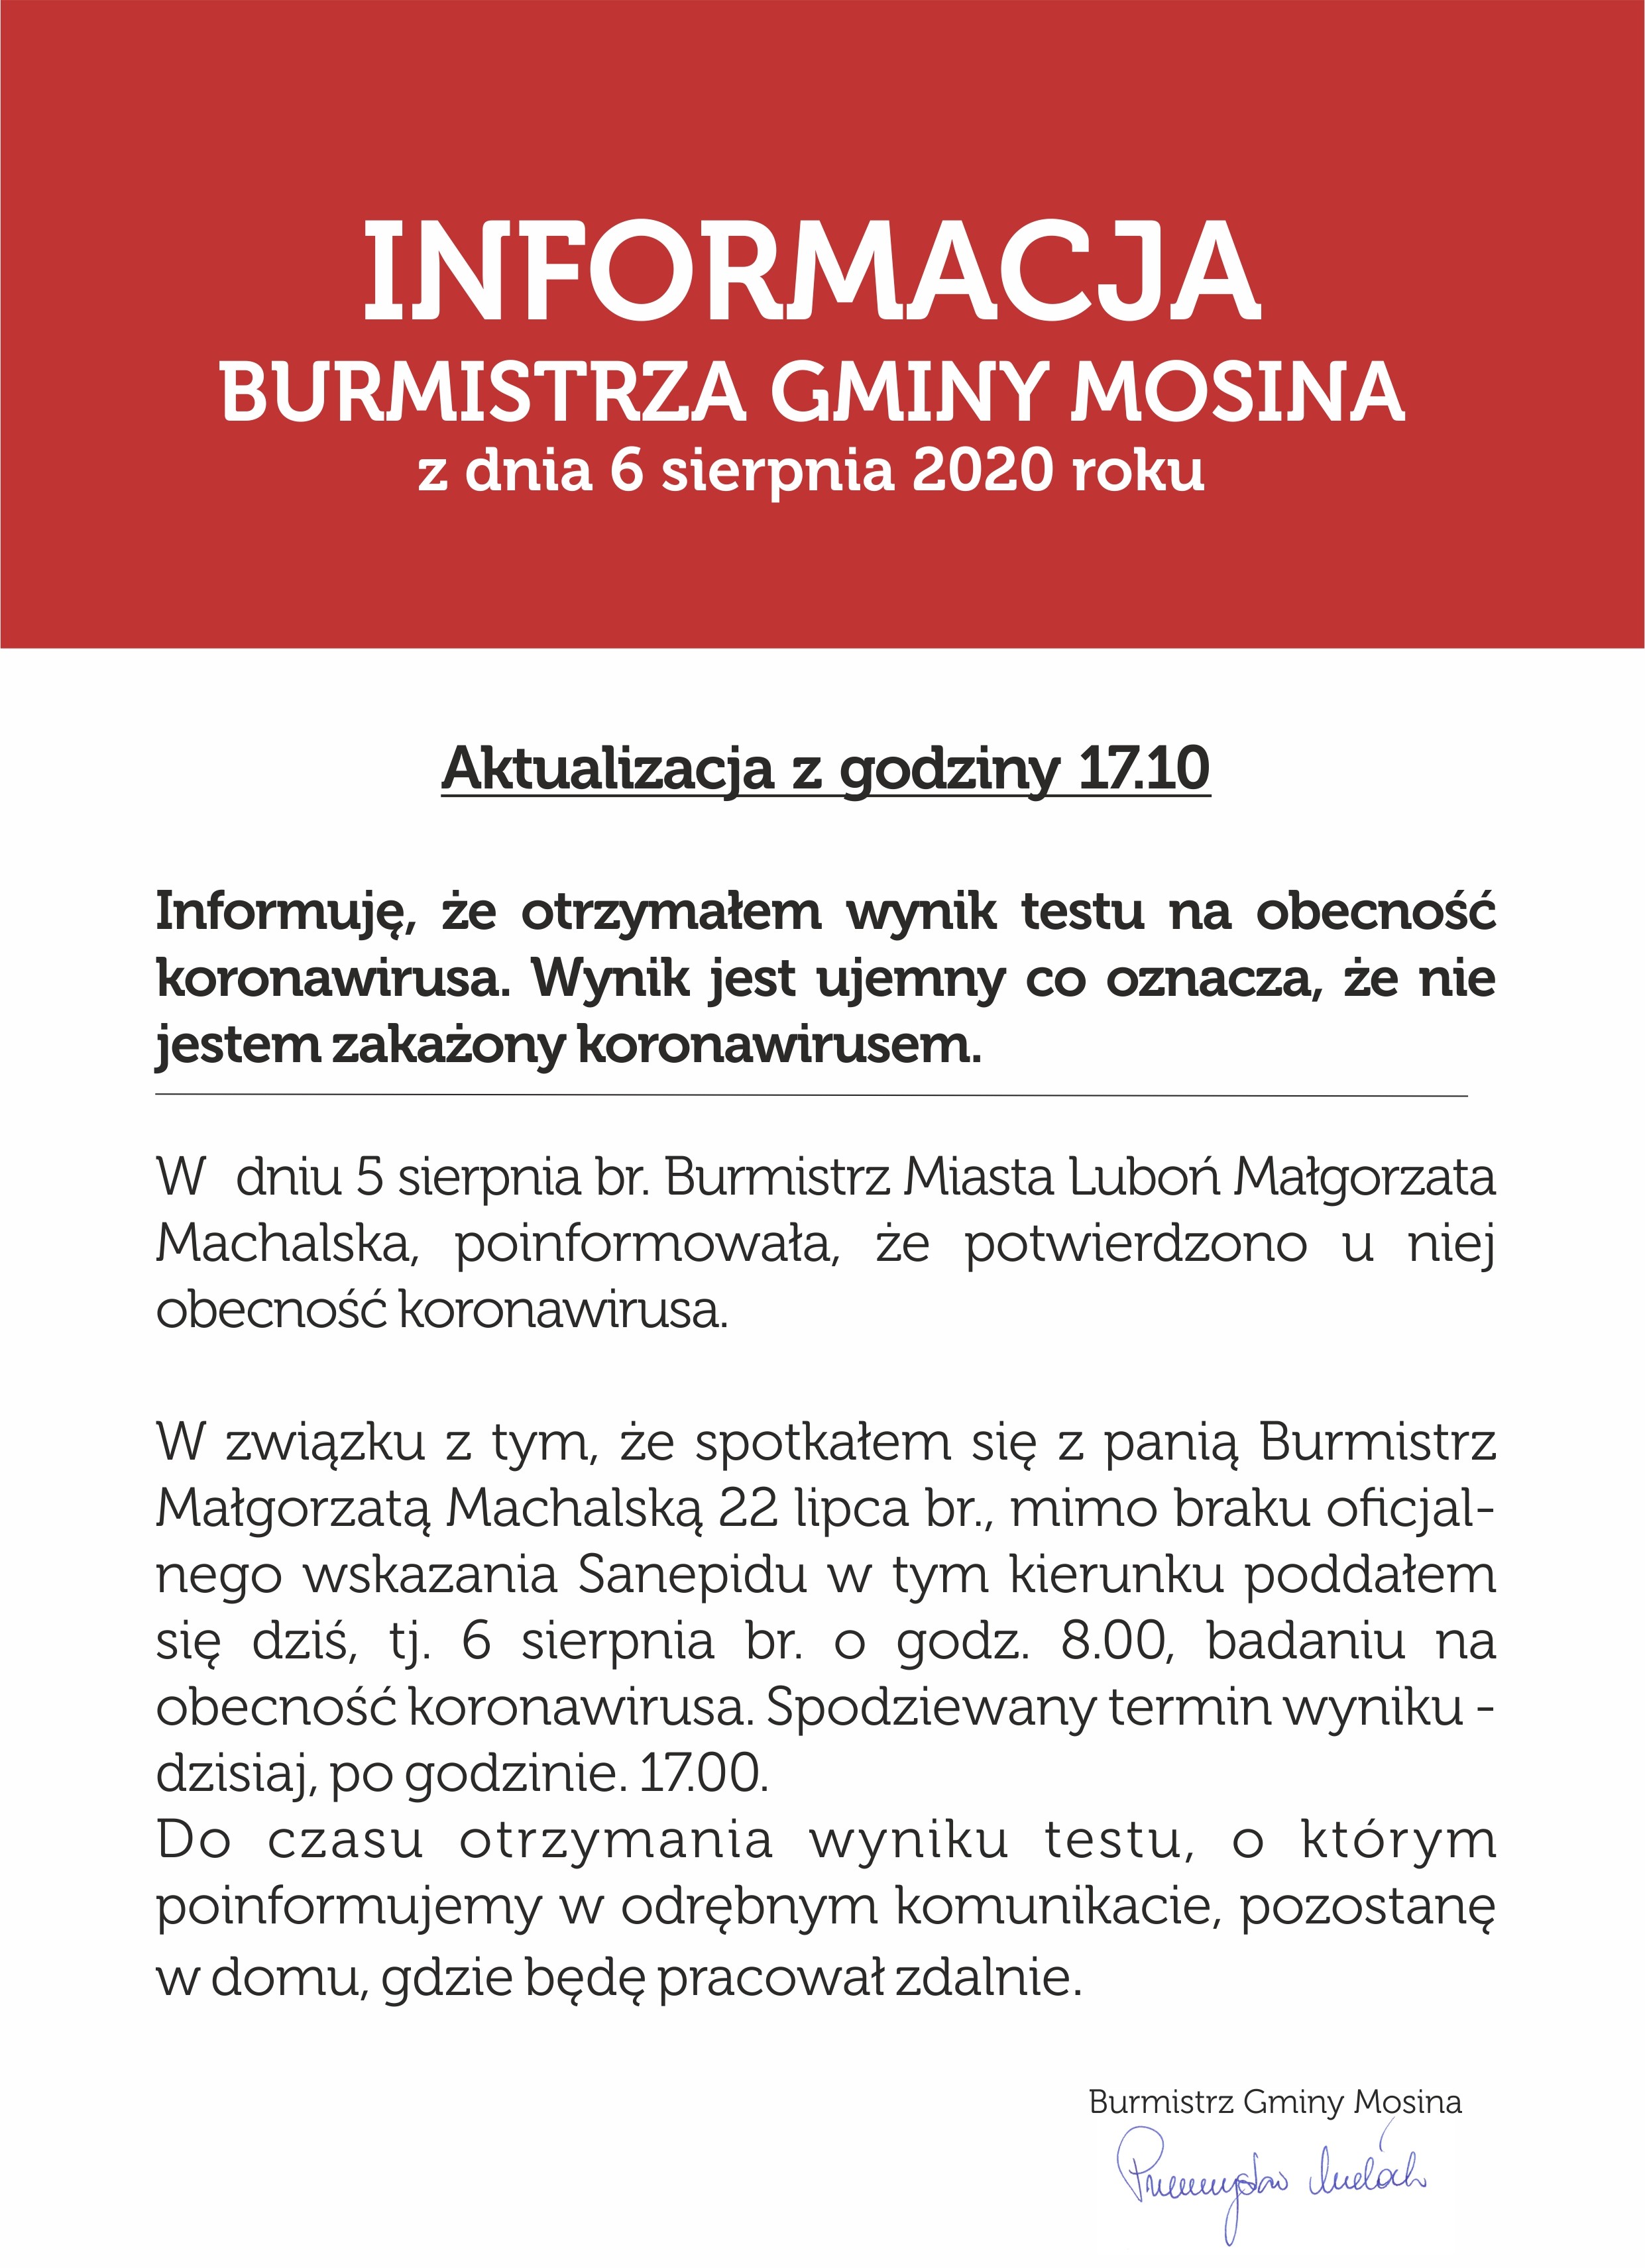 Informacja Burmistrza Gminy Mosina z dnia 6.08.2020r.